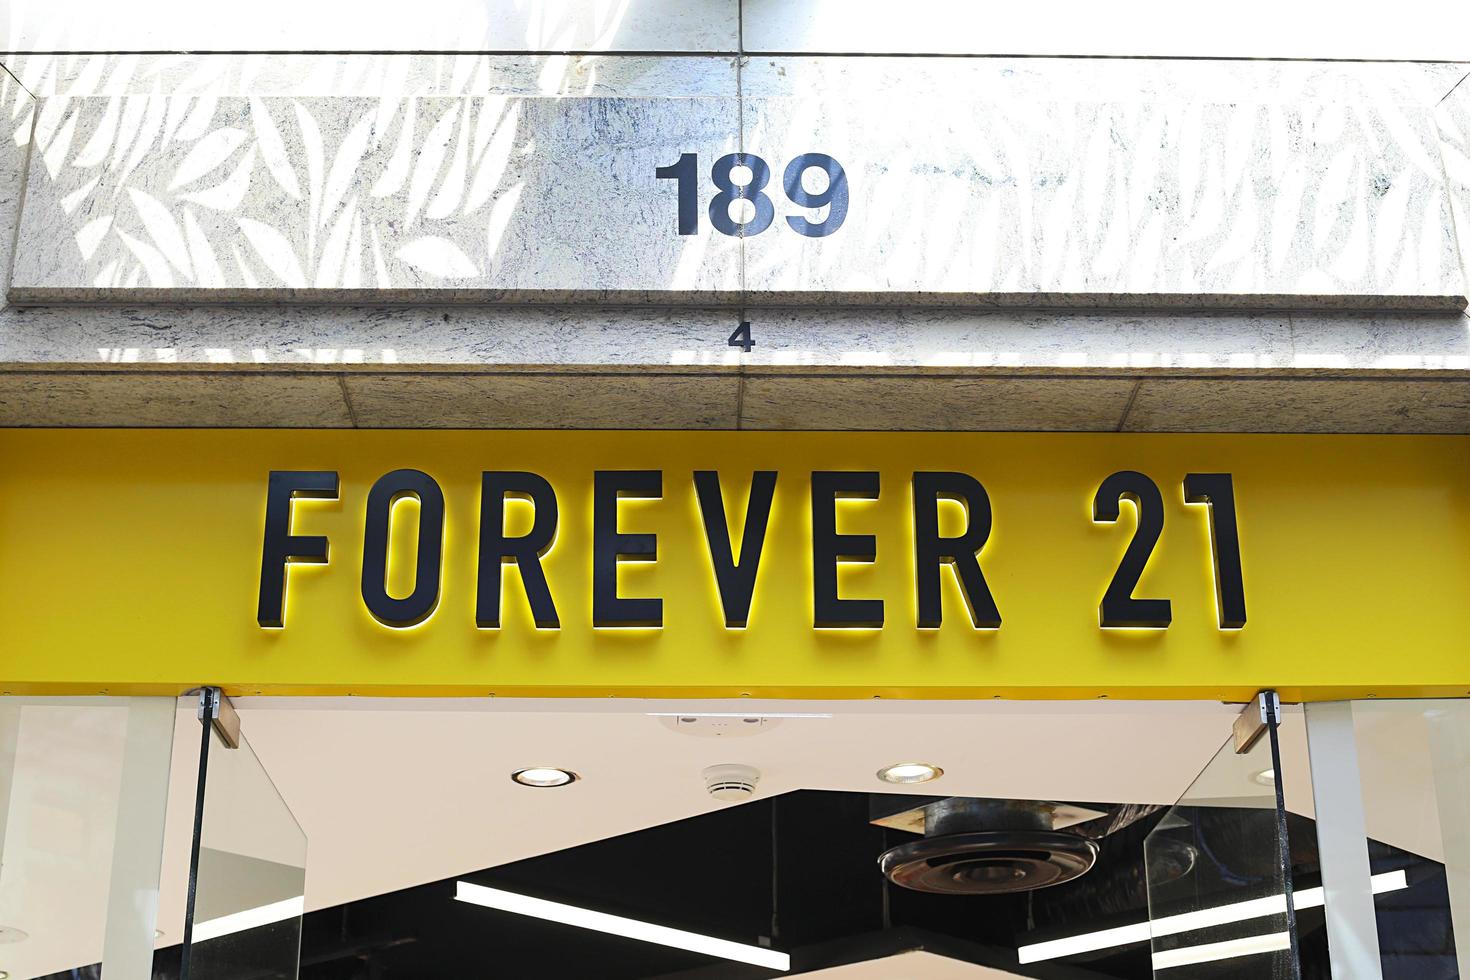 Sydney, Australia, 23 de enero de 2017 - Detalle de la tienda forever 21 en Sydney, Australia. forever 21 es un minorista de moda rápida estadounidense fundado en 1984. foto